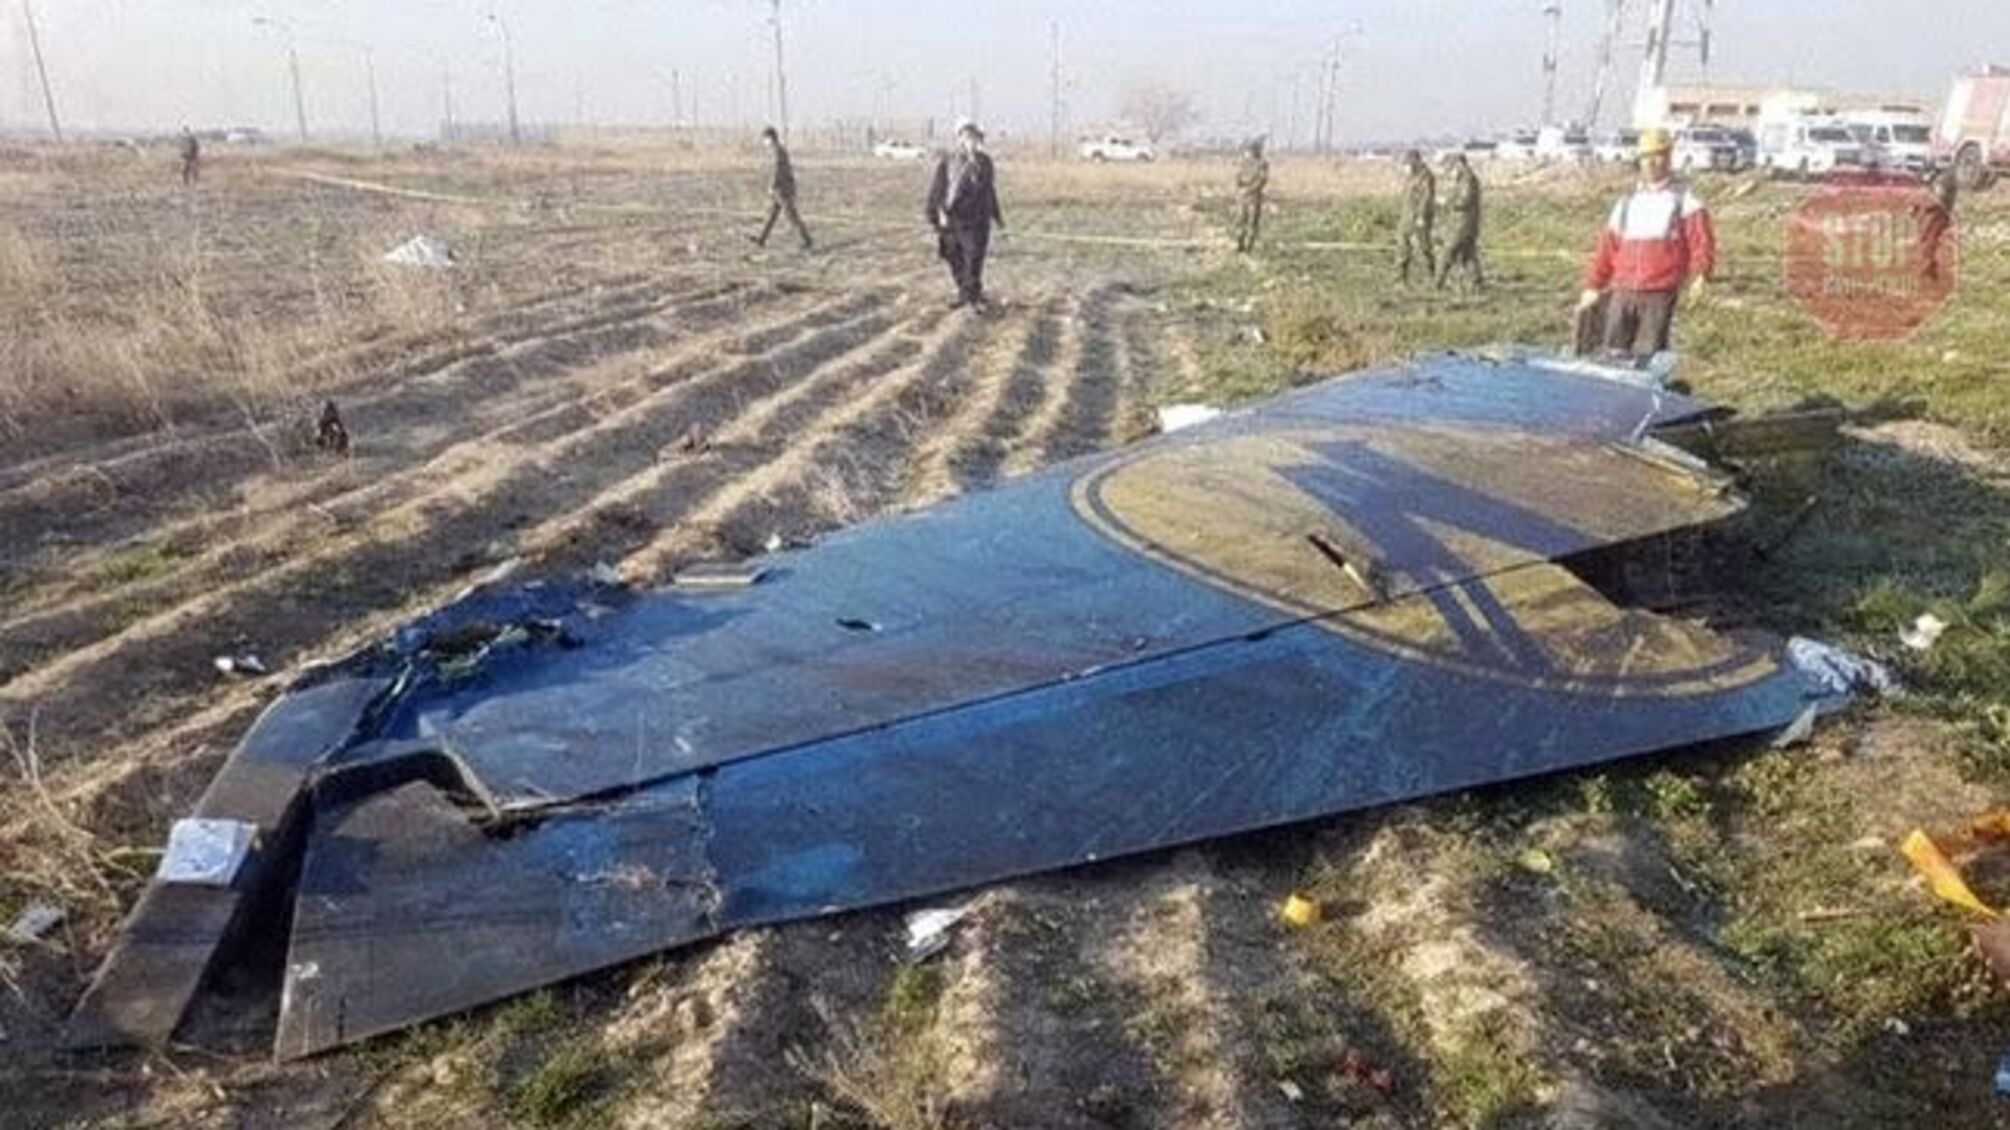 Іран готовий компенсувати за збитий літак МАУ